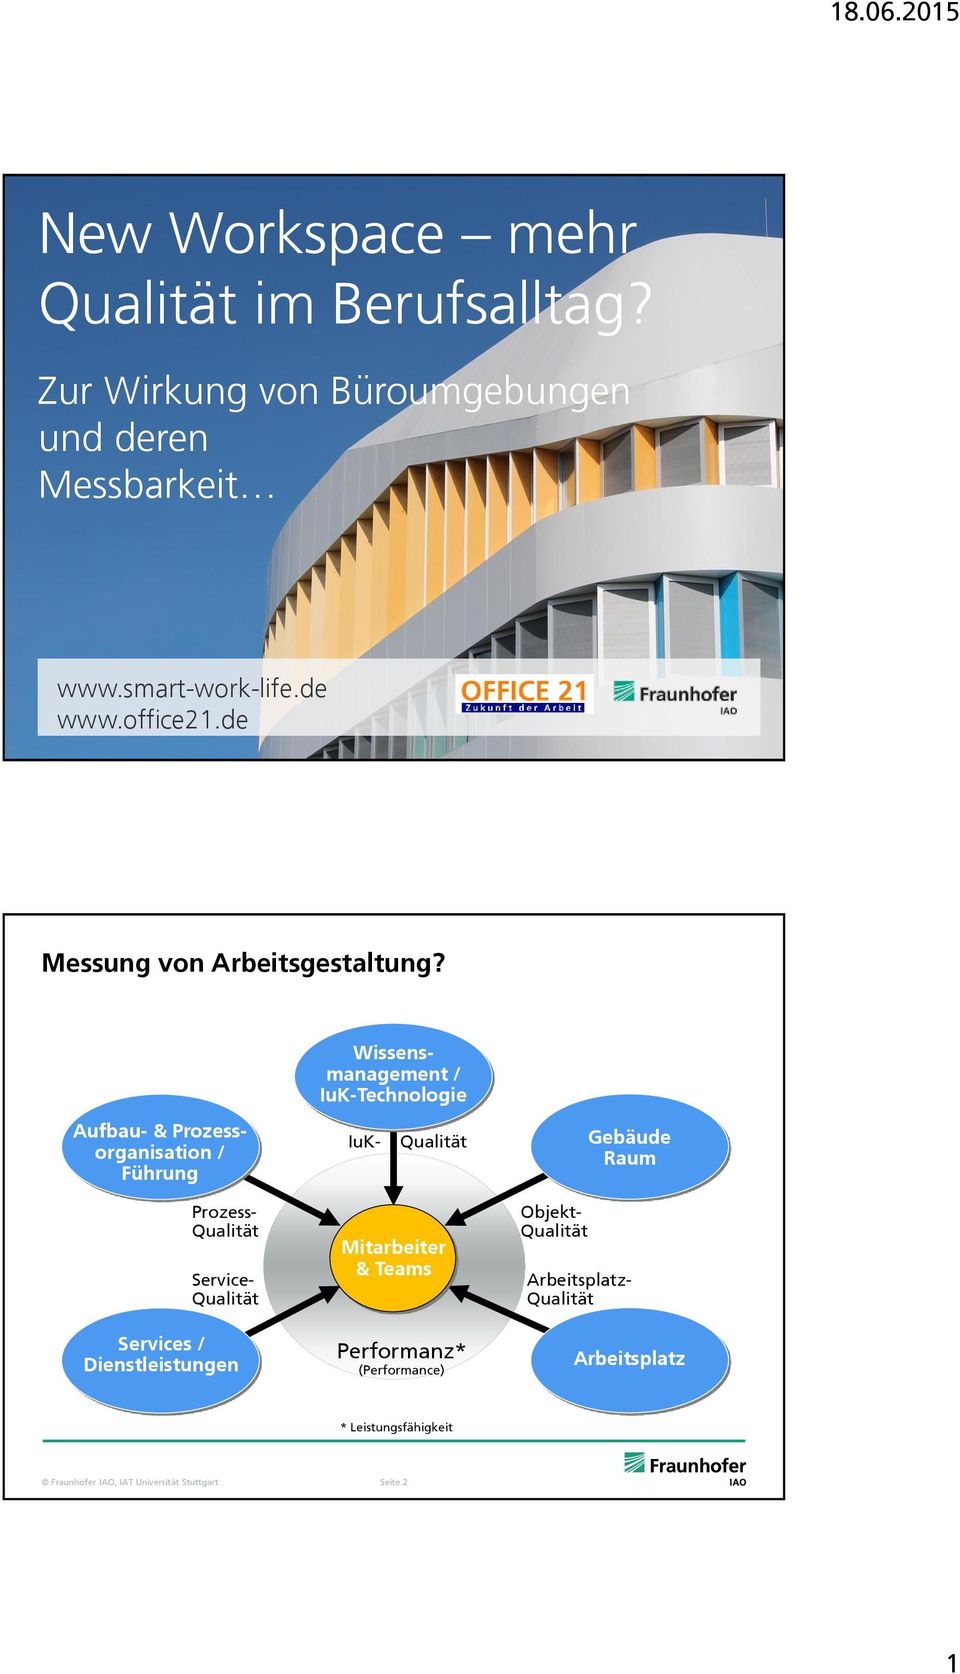 Wissensmanagement / IuK-Technologie Aufbau- & Prozessorganisation / Führung IuK- Gebäude Raum Prozess- Service- Services /